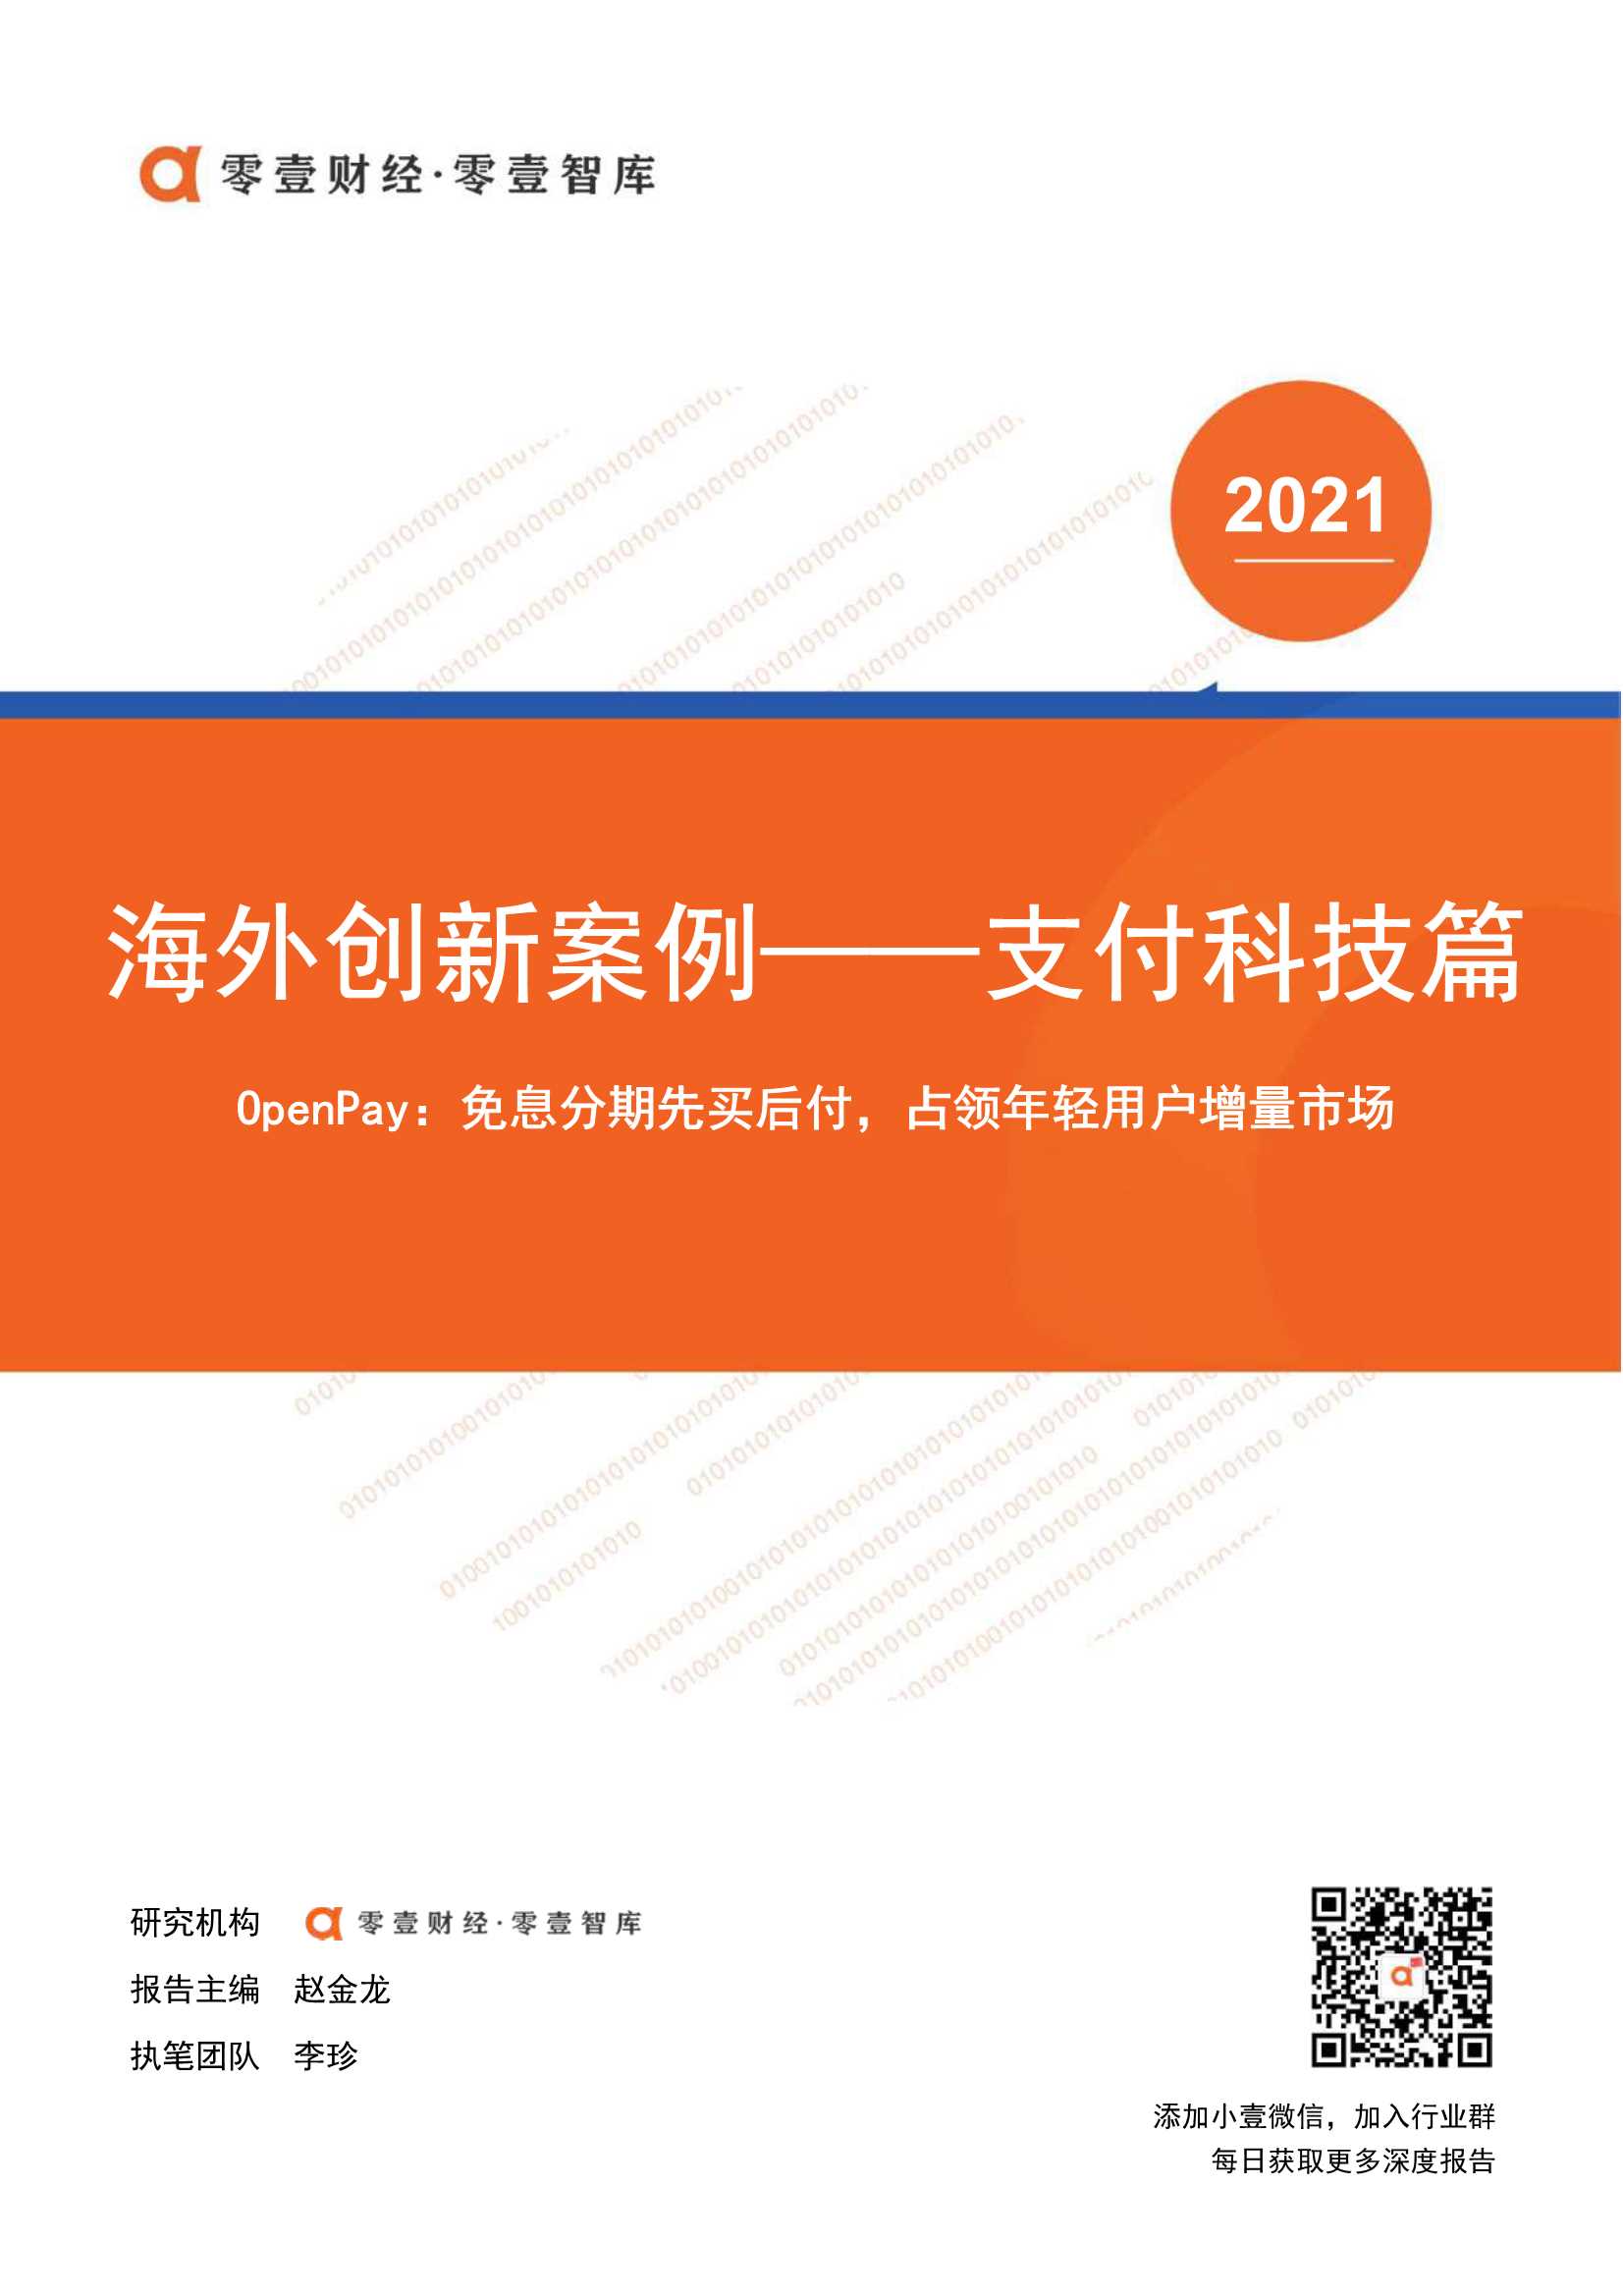 零壹智库-海外创新案例 OpenPay：免息分期先买后付，占领年轻用户增量市场-2021.11-8页